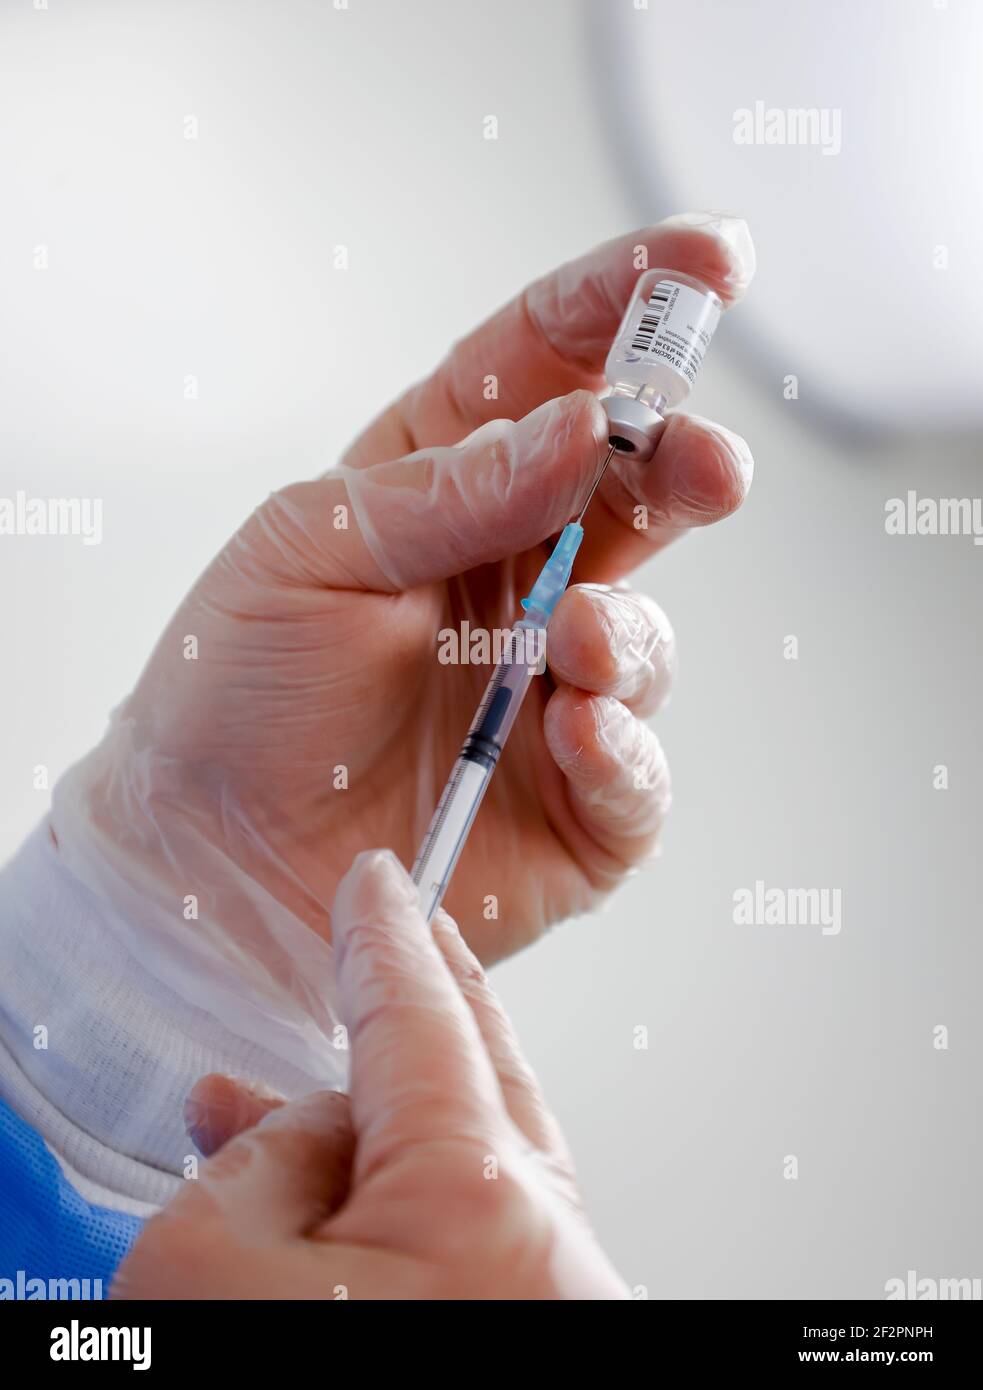 Essen, Nordrhein-Westfalen, Deutschland - Impfbeginn im Corona Impfzentrum Essen werden die Impfspritzen, BioNTech-Pfizer-Impfstoff, 6 Impfdosen aus einer Ampulle auf Impfspritzen gezogen. Stockfoto